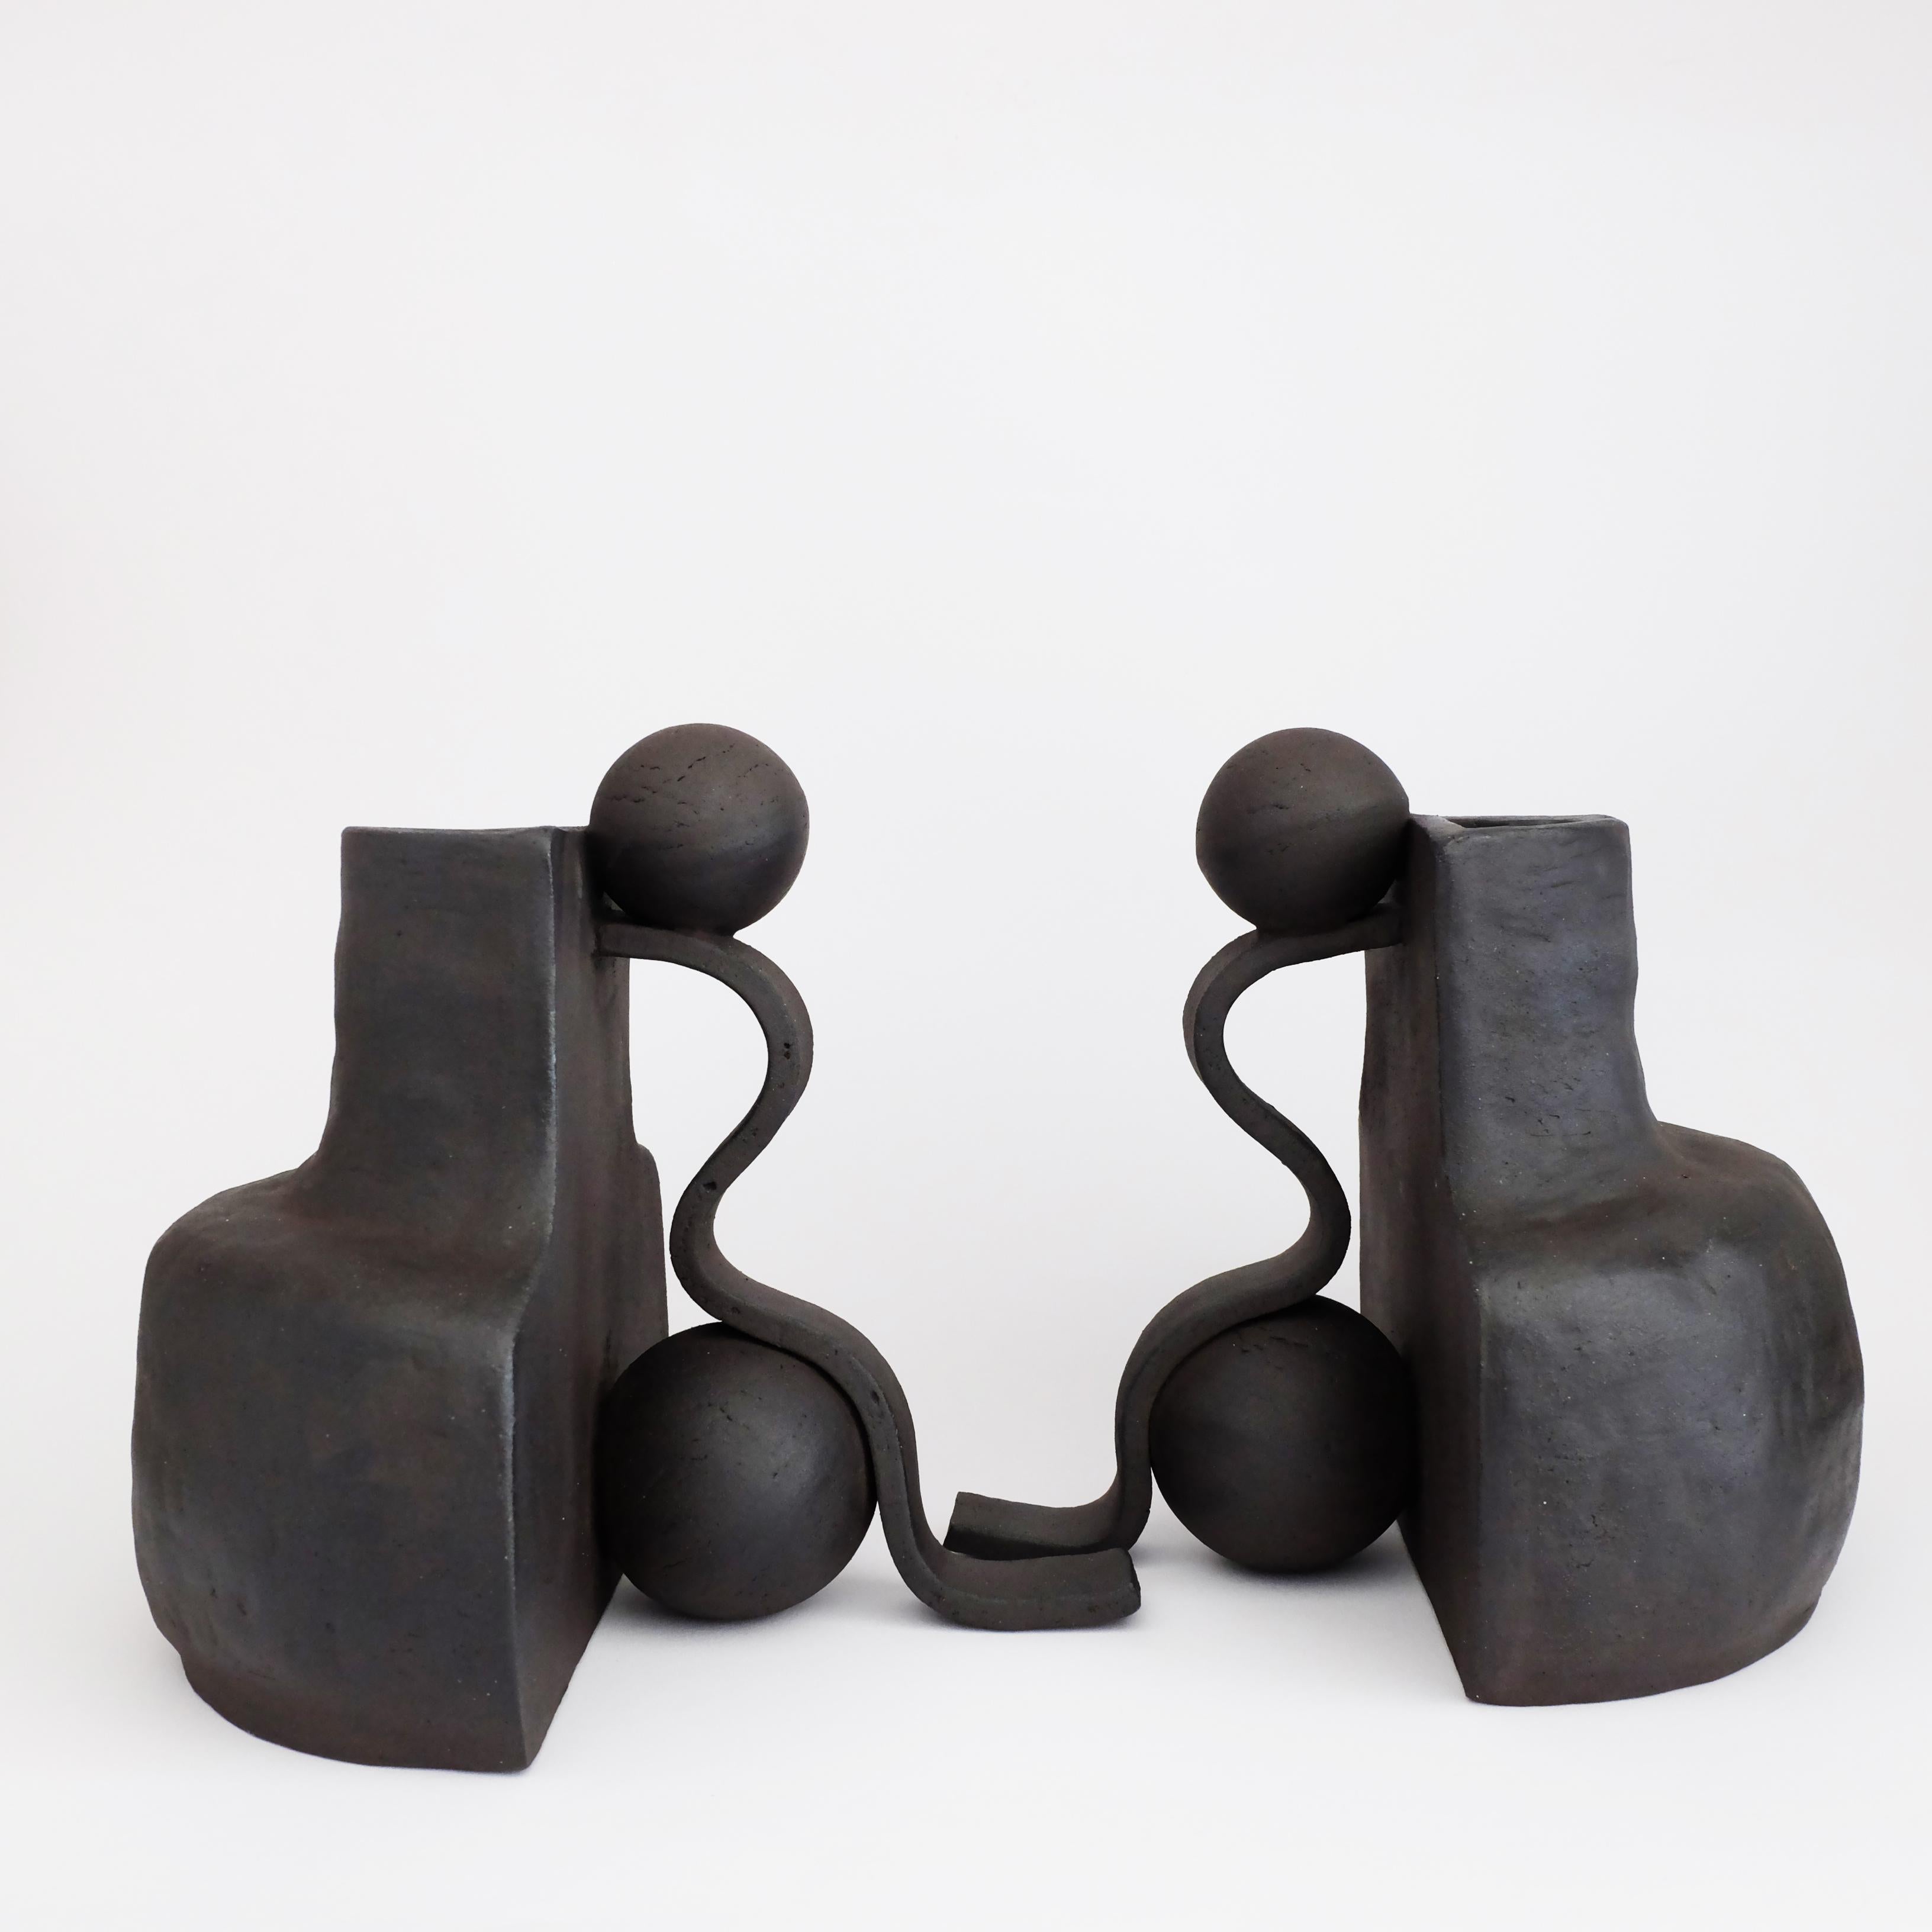 Set aus 2 skulpturalen Fragment 02-Vasen von Ia Kutateladze
Einzigartig in seiner Art.
Abmessungen: B 21 x H 21 cm.
MATERIALIEN: Roher schwarzer Ton.

Die Vase Fragment 02 ist ein skulpturales, funktionales Objekt, das aus schwarzem Ton